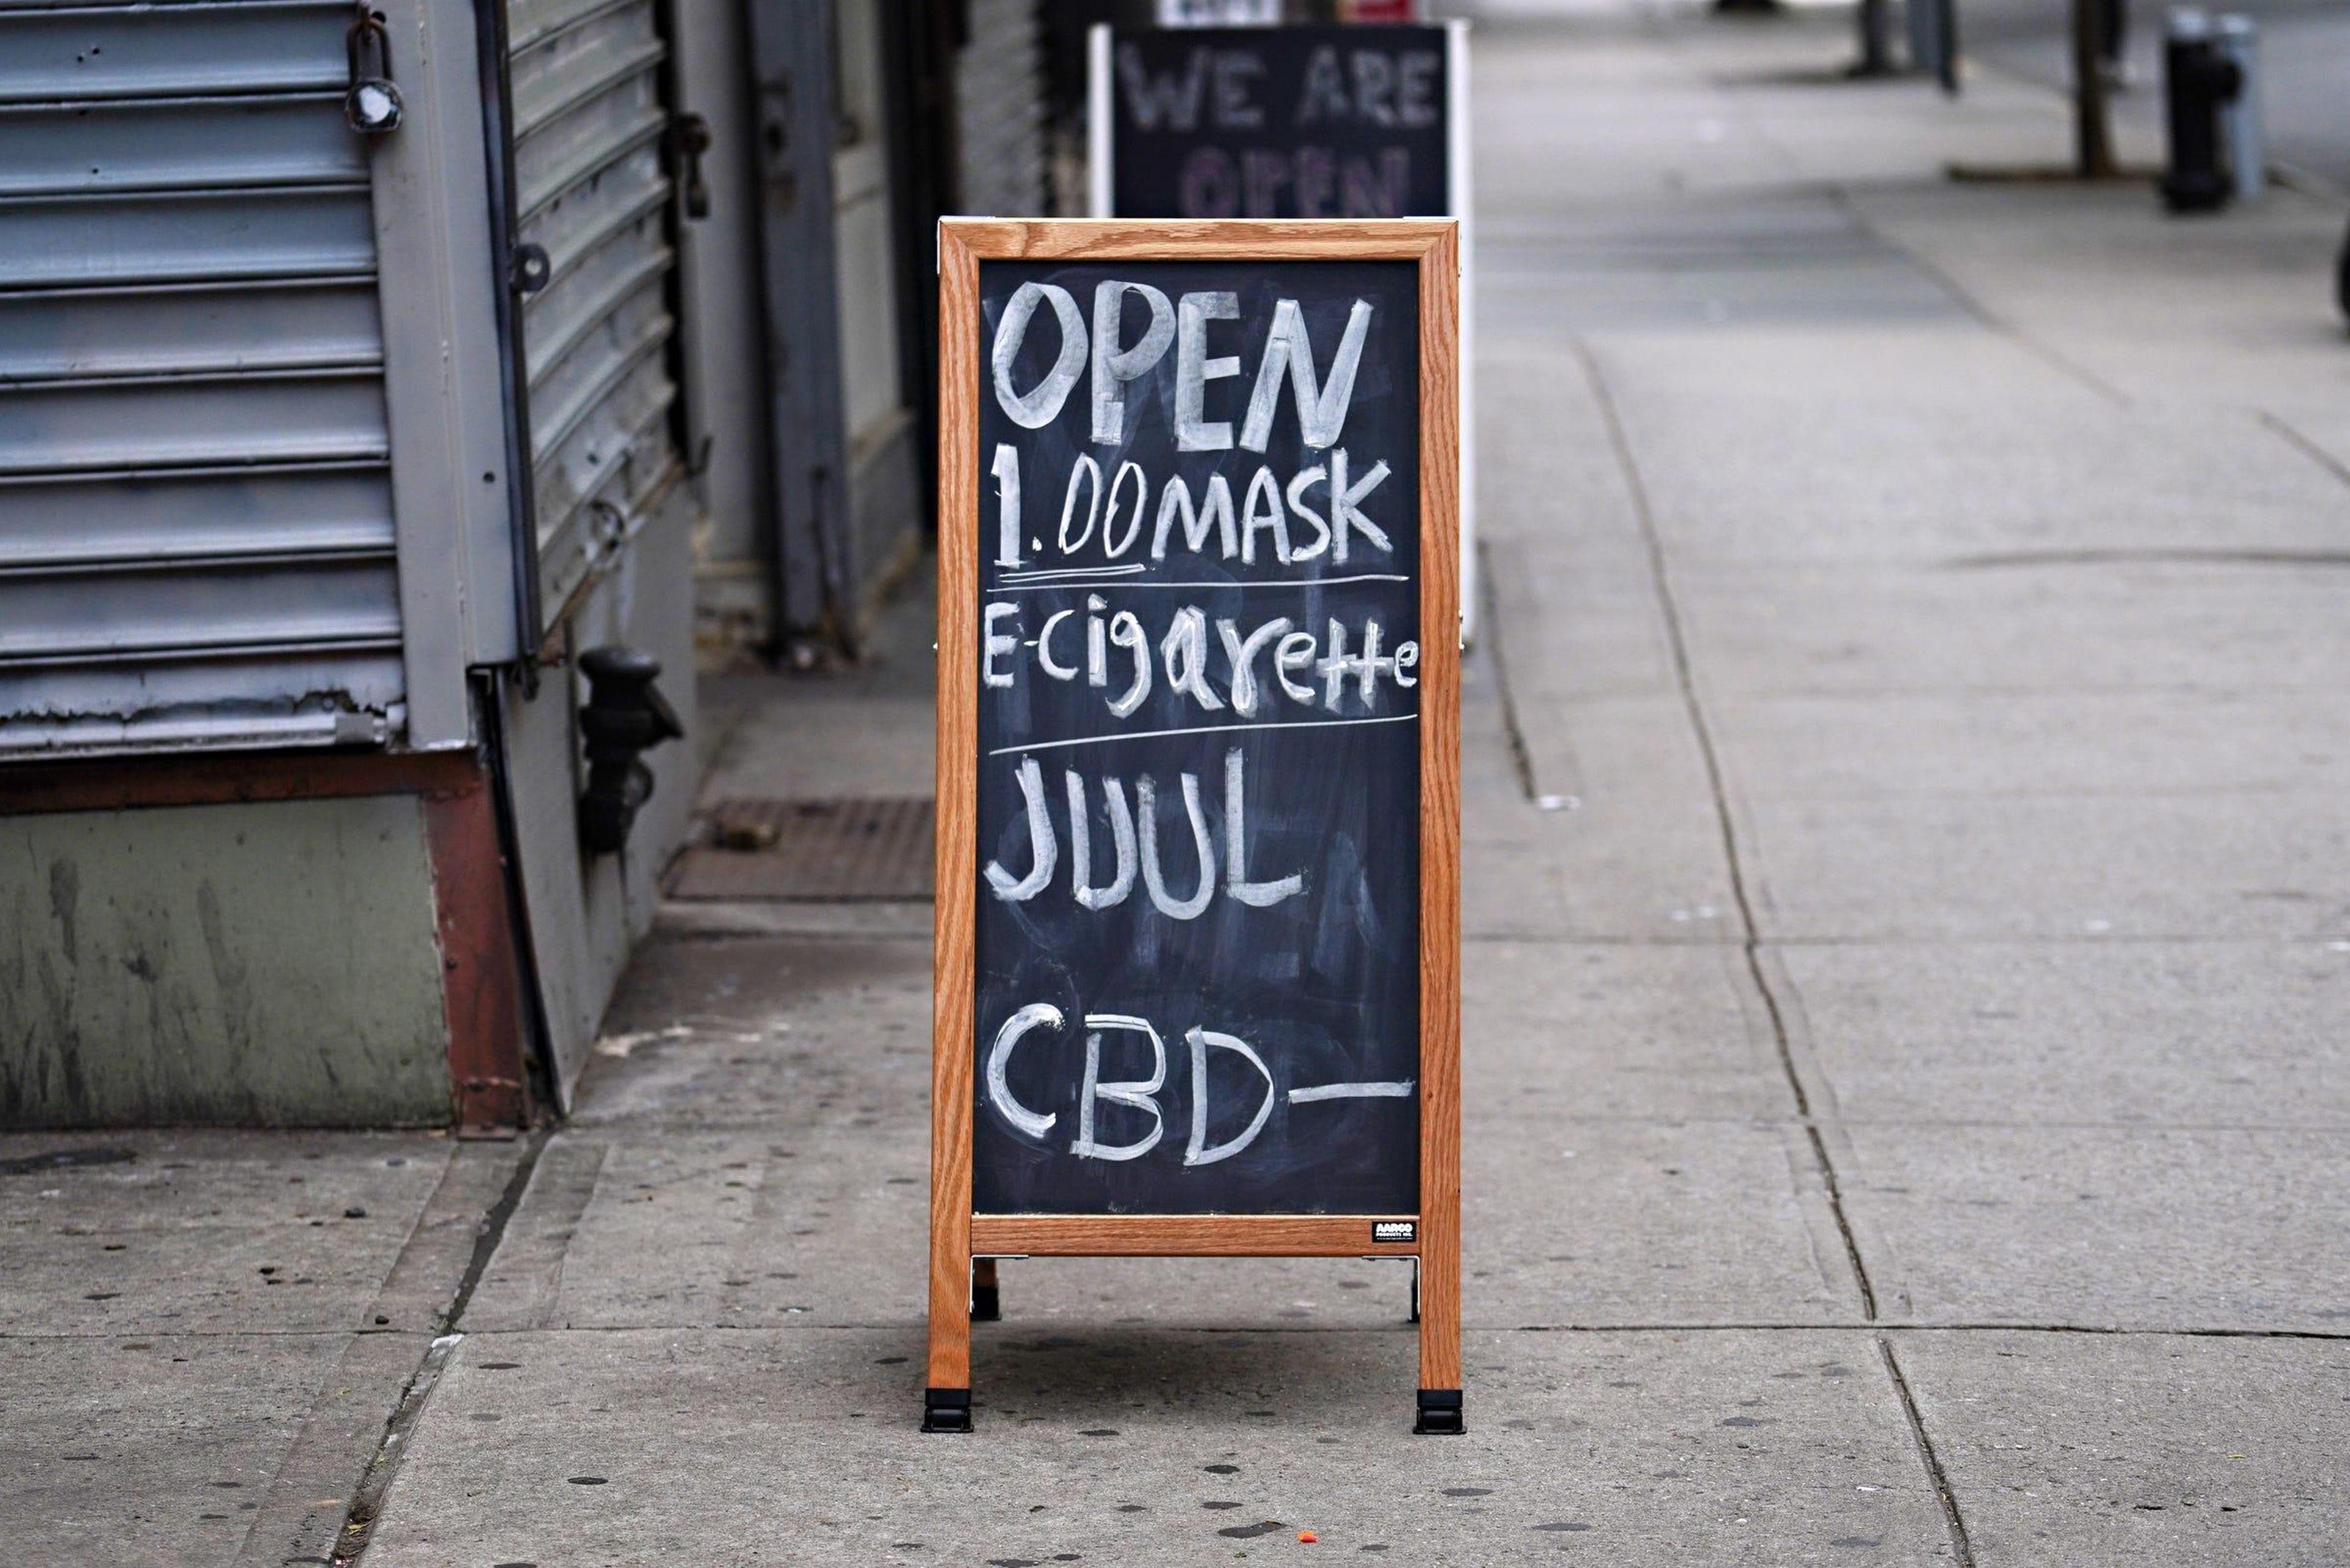 Un negocio muestra un cartel de venta de mascarillas, cigarrillos electrónicos y CBD durante la pandemia de coronavirus, el 27 de mayo de 2020, en Nueva York, EEUU.